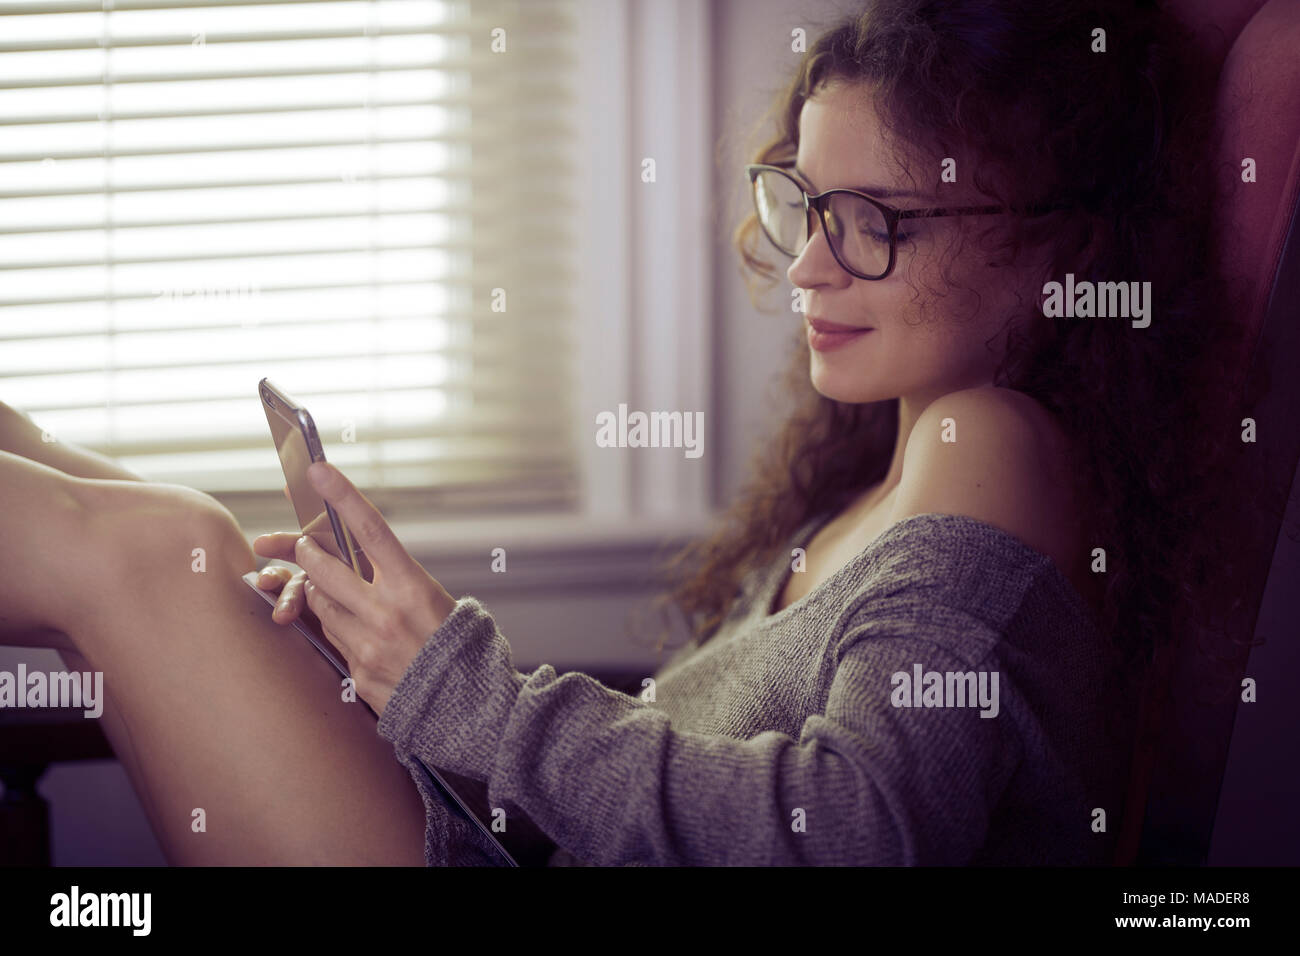 Retrato de una joven mujer sonriente en gafas para leer sentado con un iPhone en sus manos en una silla junto a la ventana, los mensajes de texto, mensajería concepto Foto de stock